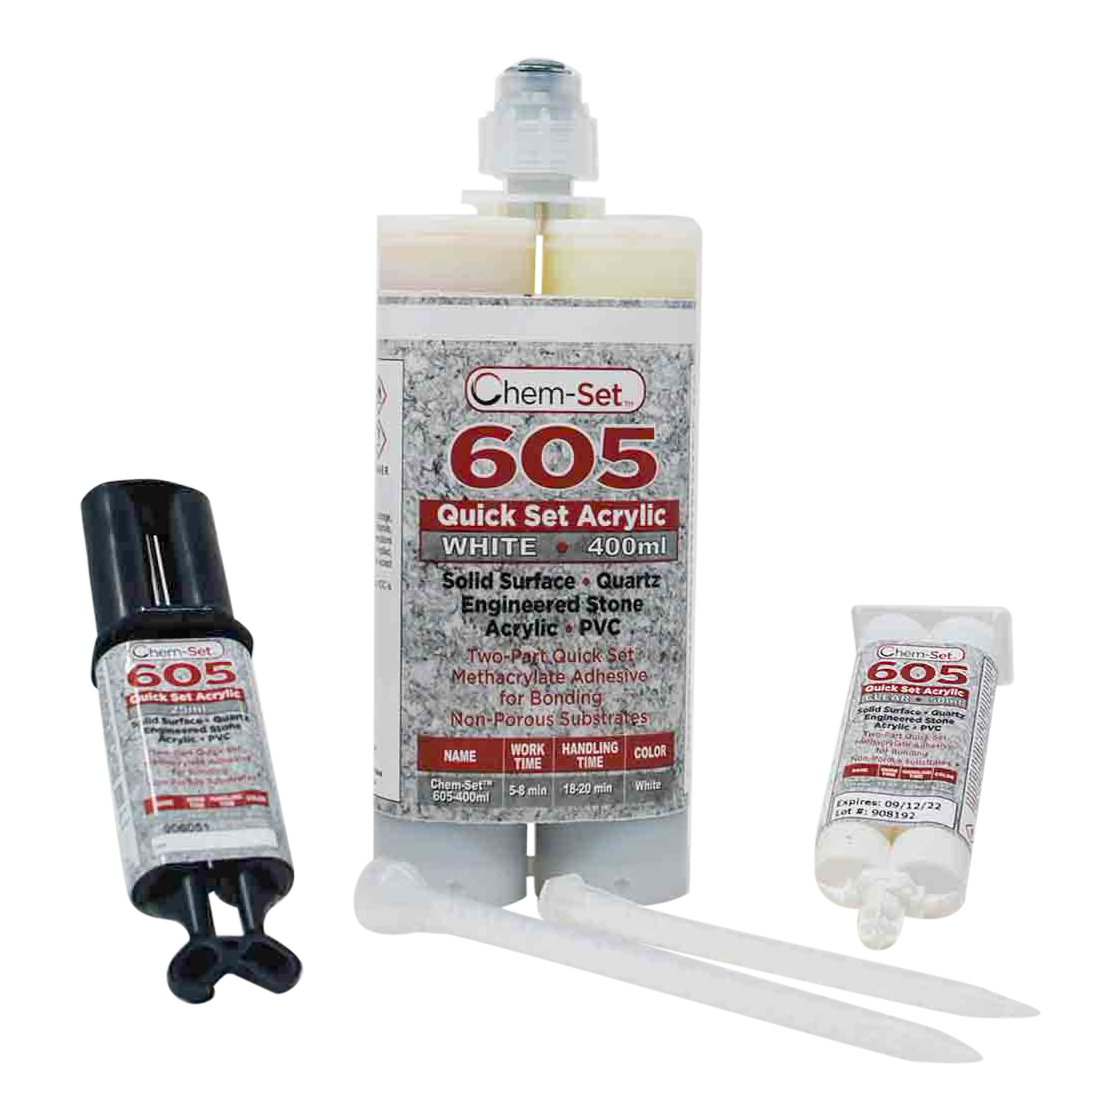 Chem-Set™ 605 Quick Set Acrylic Adhesive